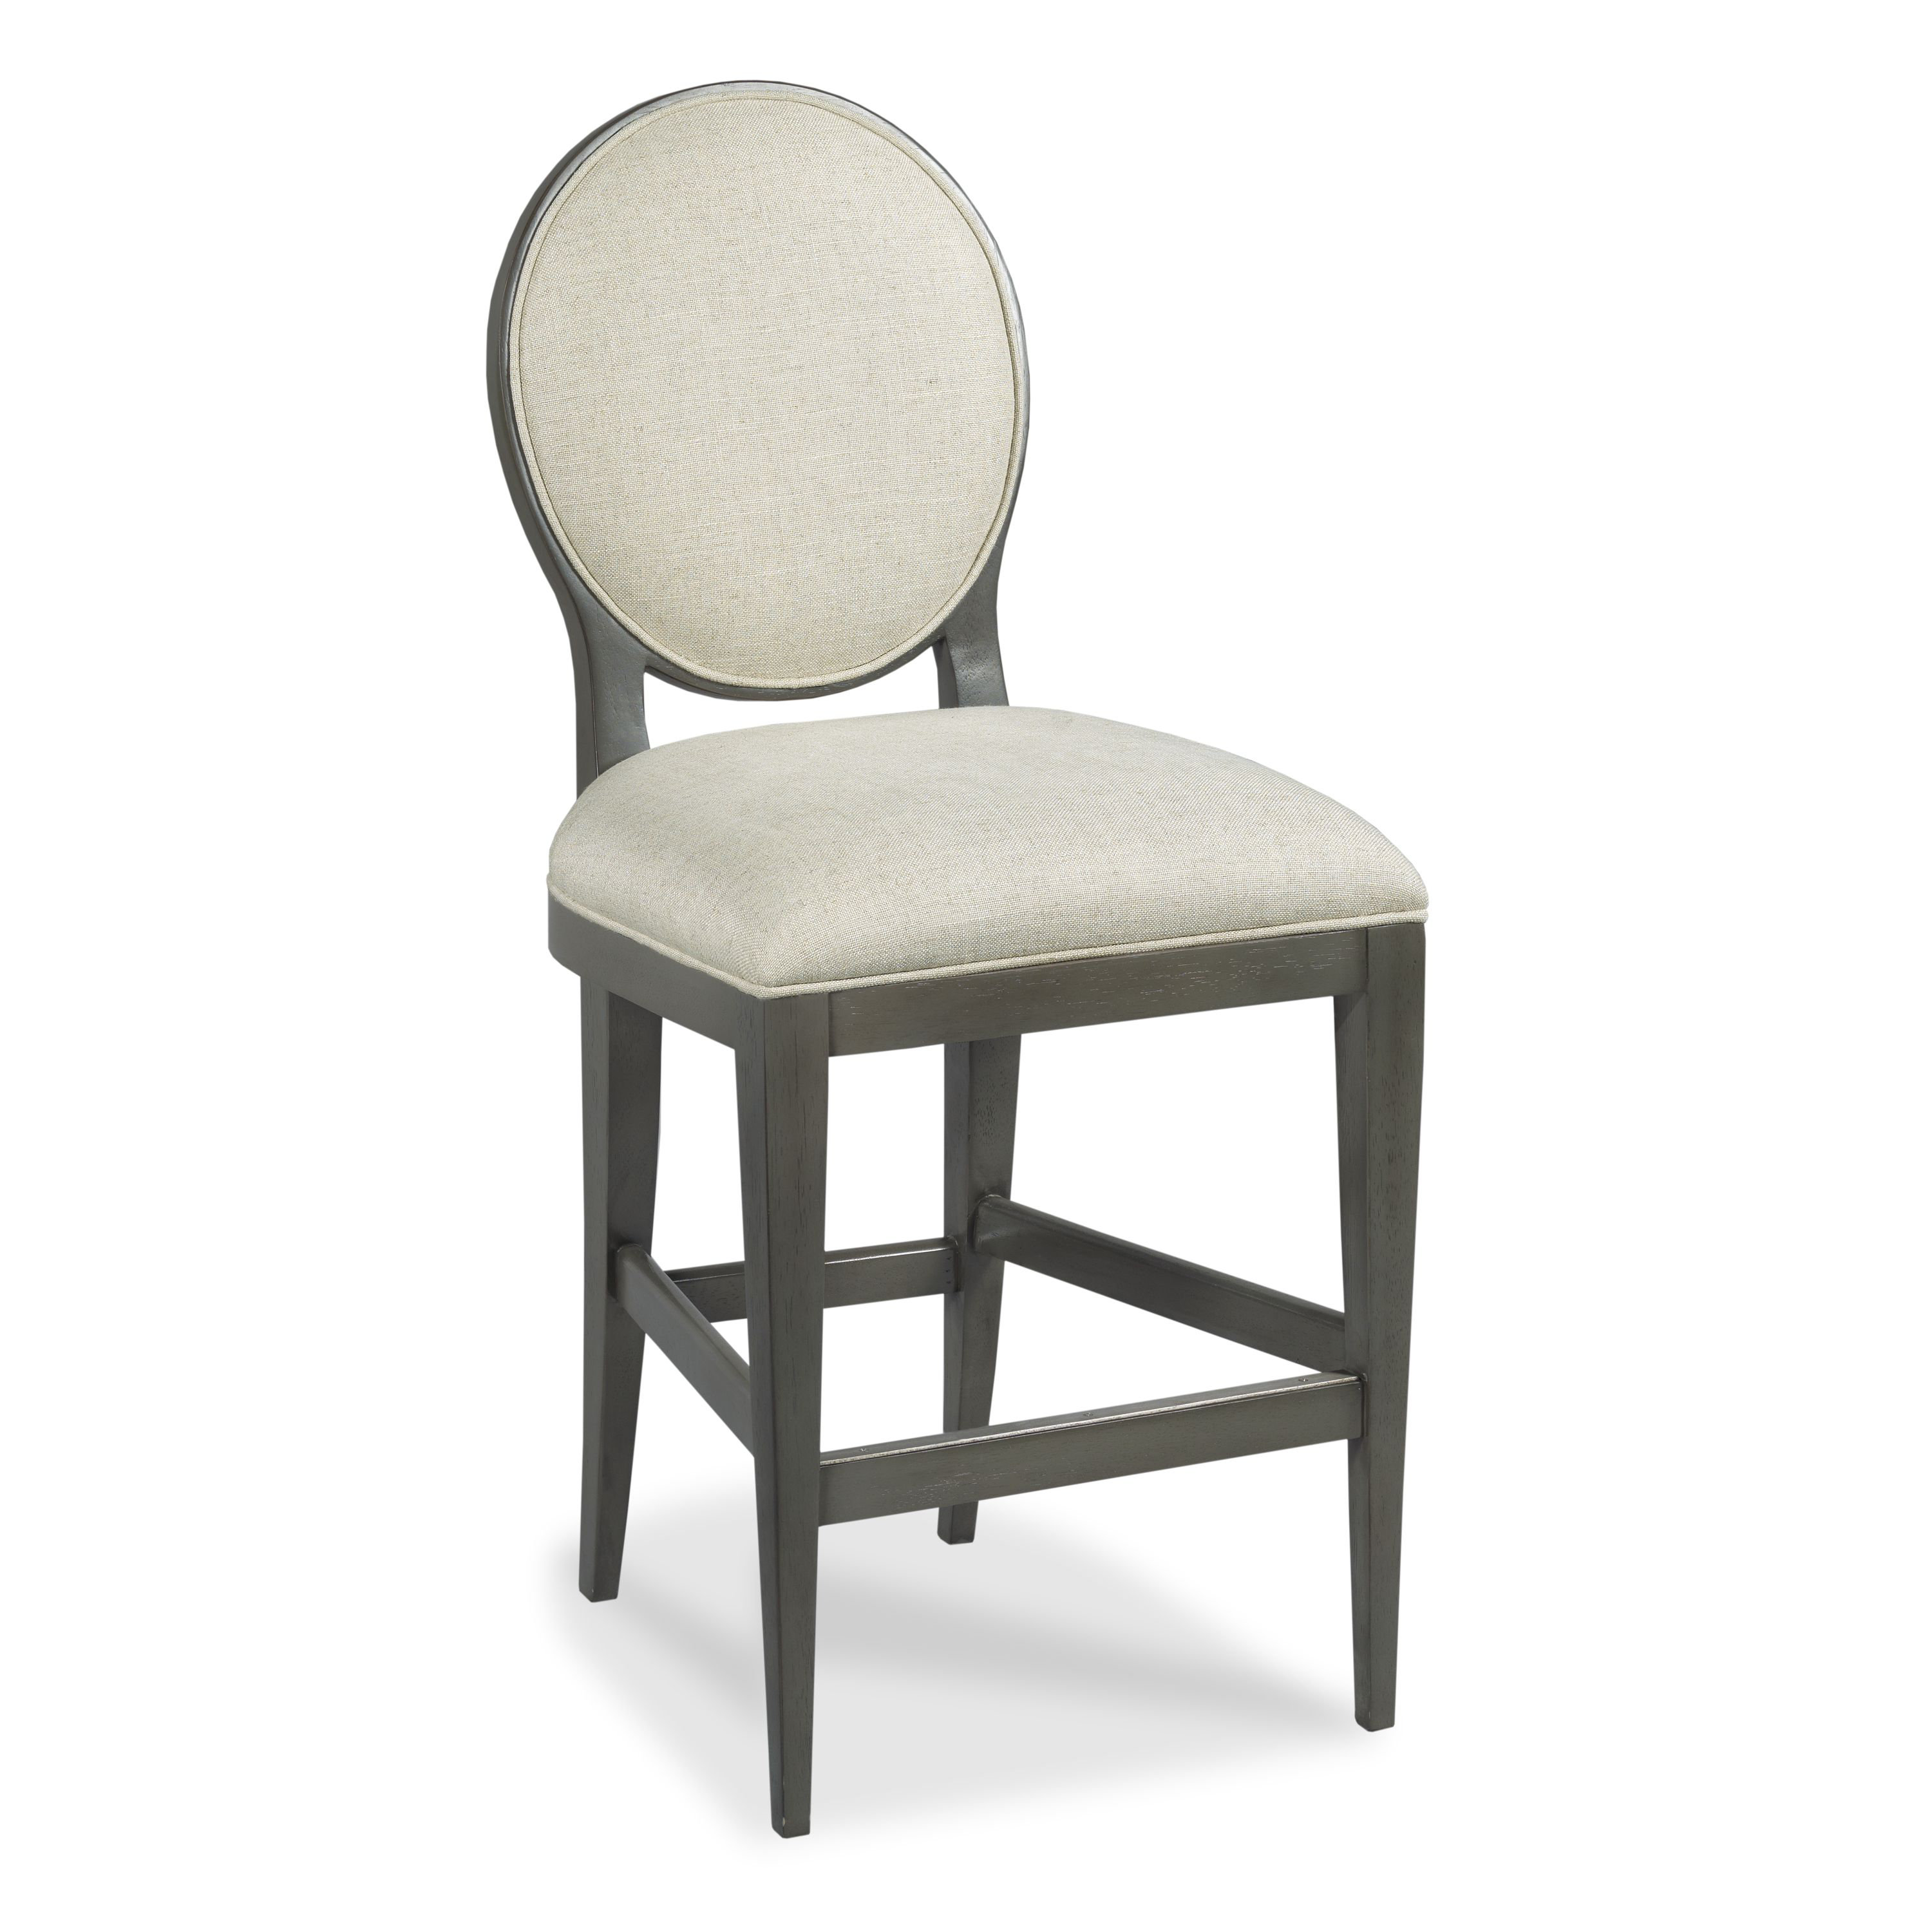 https://assets.wfcdn.com/im/20967535/compr-r85/2319/231966712/ovale-bar-counter-stool.jpg